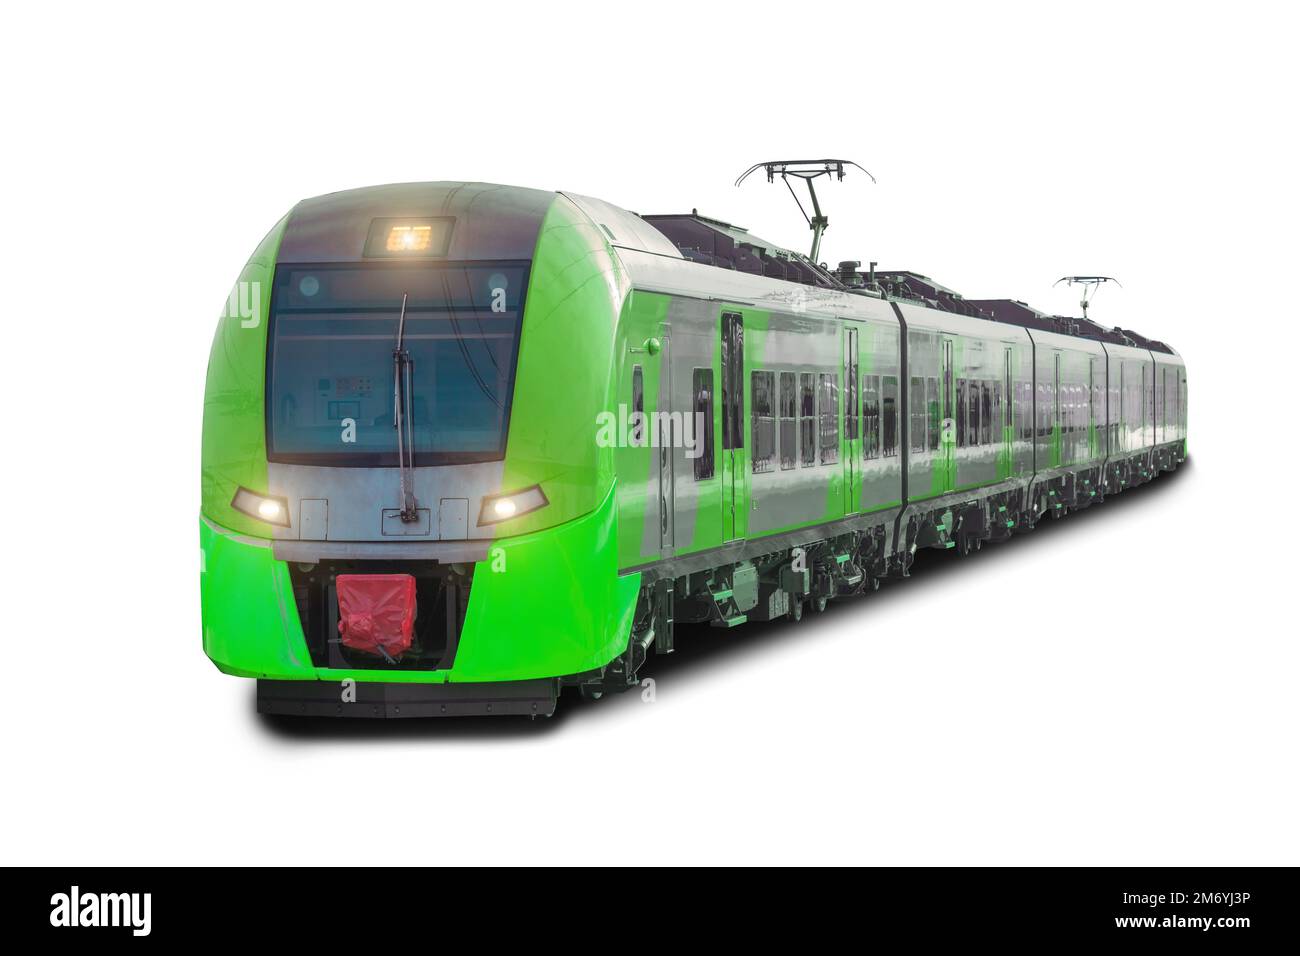 Composición de tren largo de tren verde eléctrico de la ciudad de vagones, aislado sobre fondo blanco Foto de stock